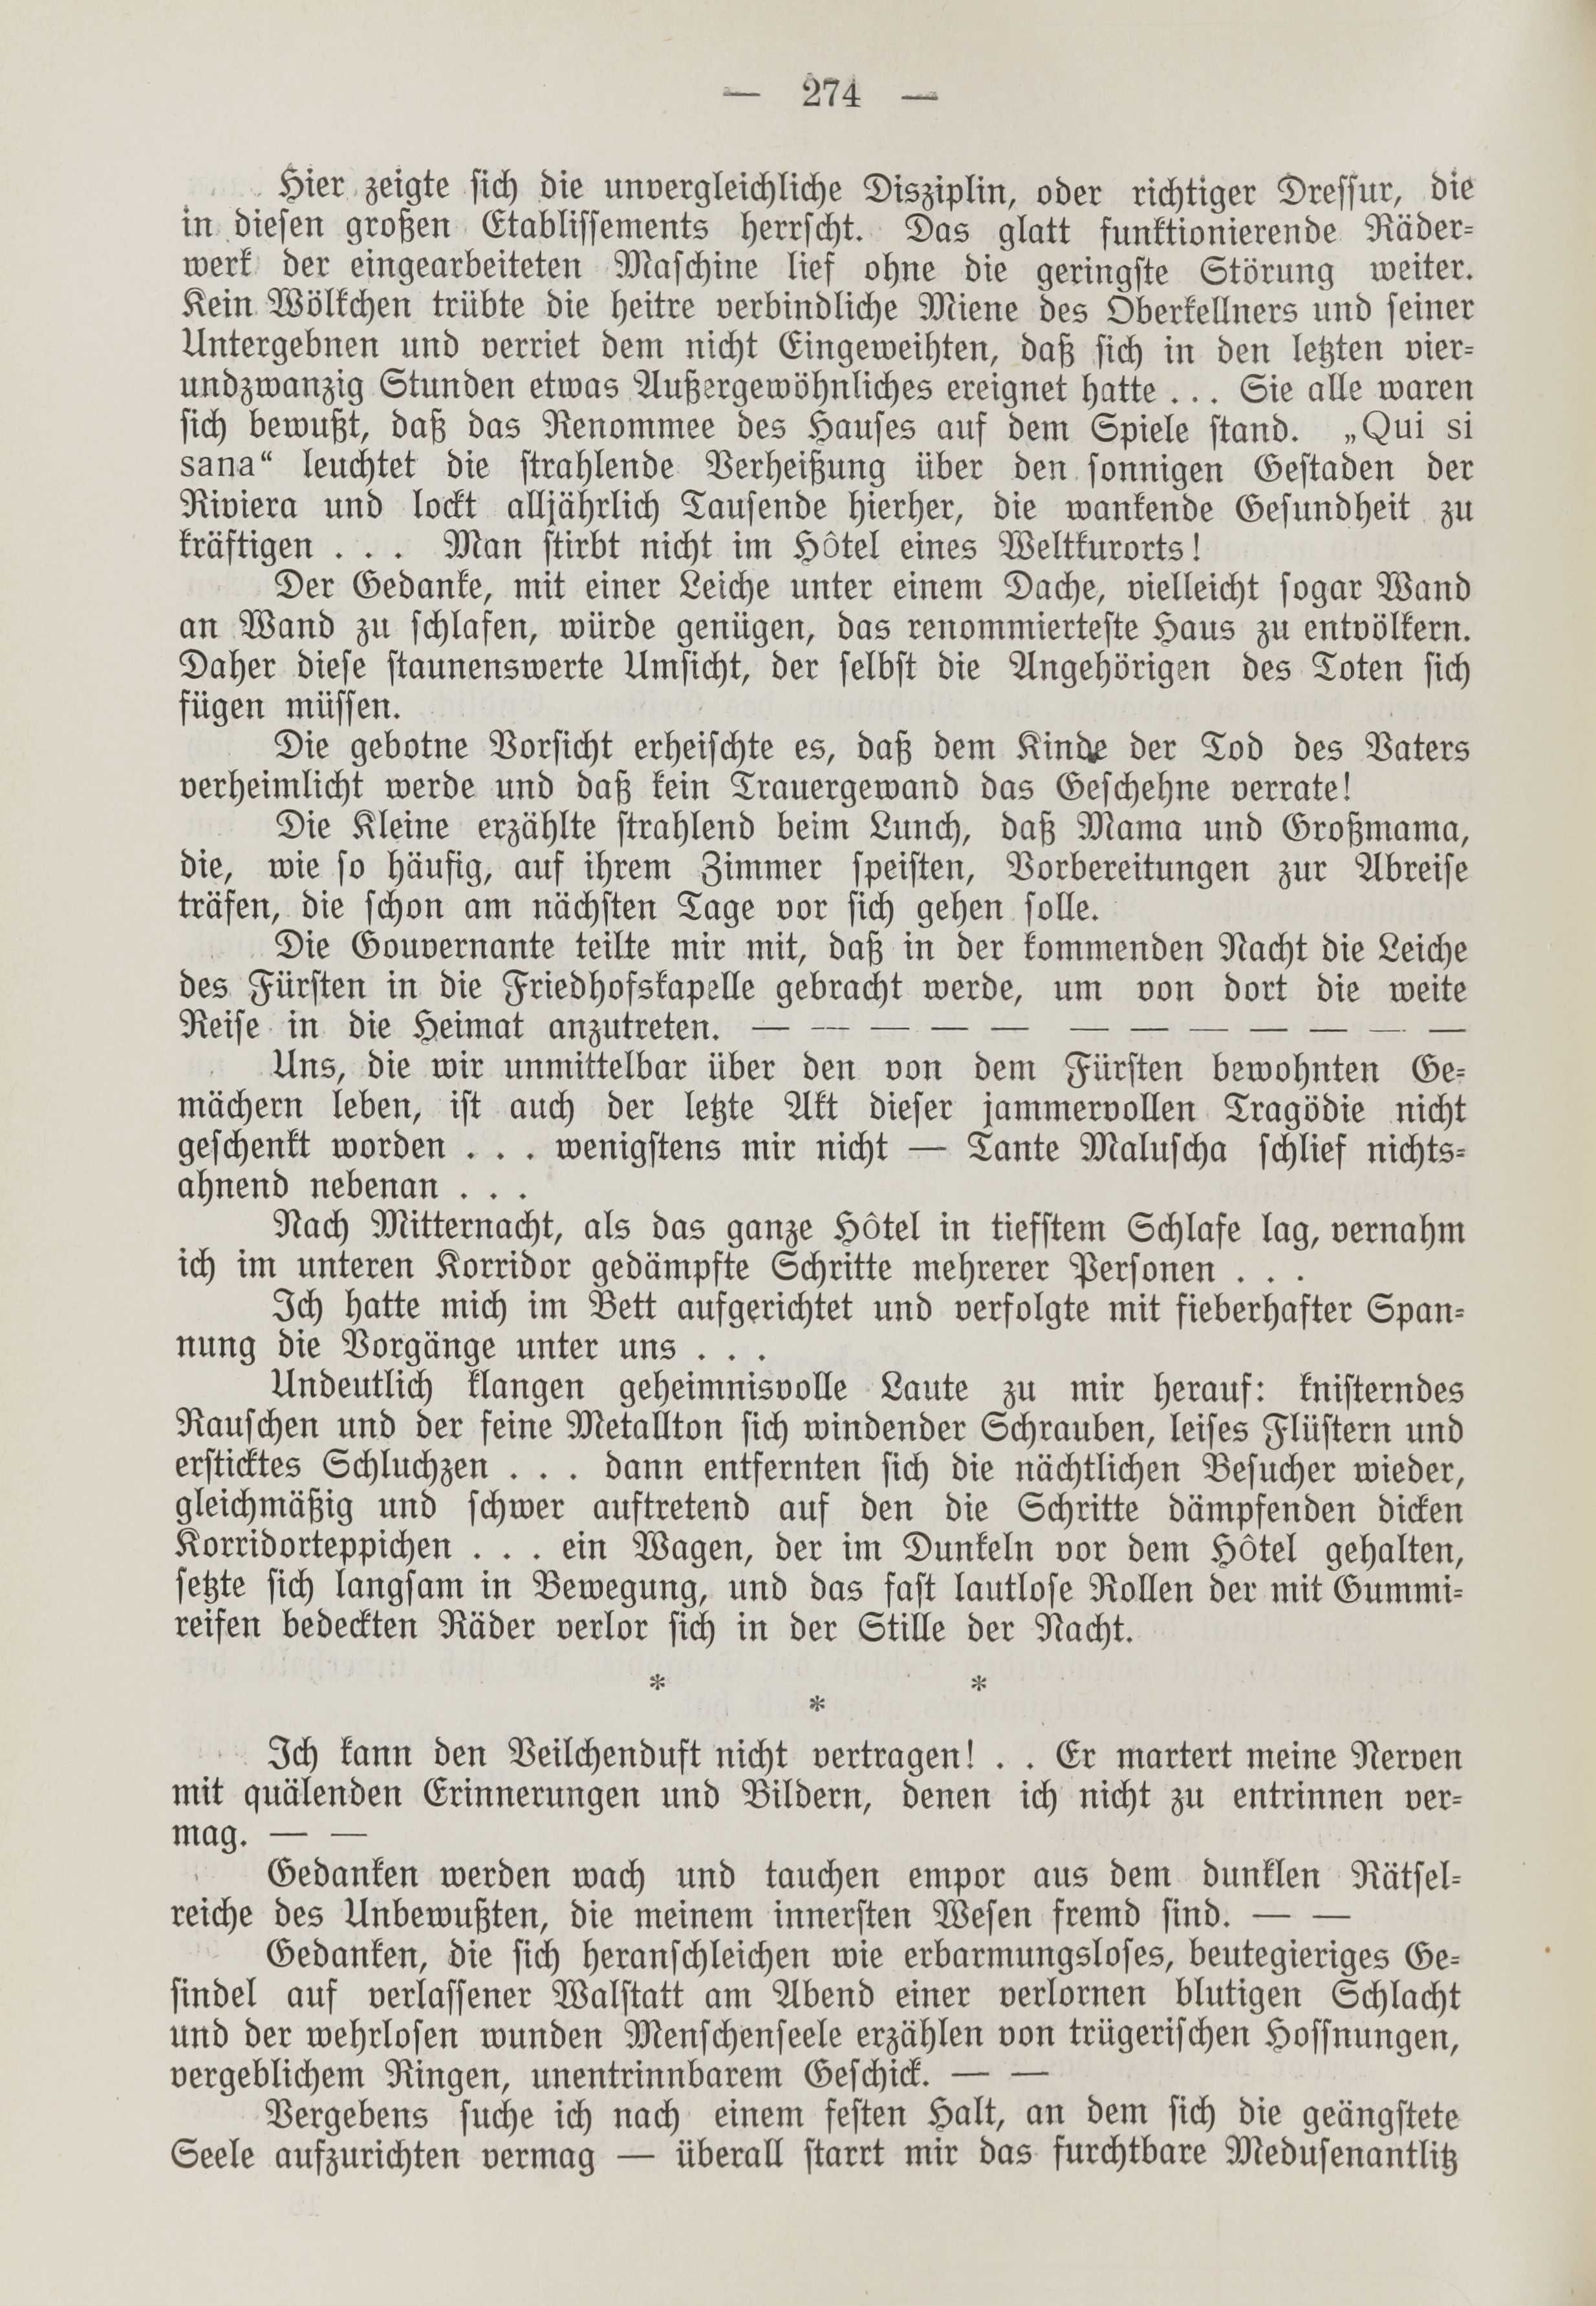 Deutsche Monatsschrift für Russland [1] (1912) | 282. (274) Haupttext